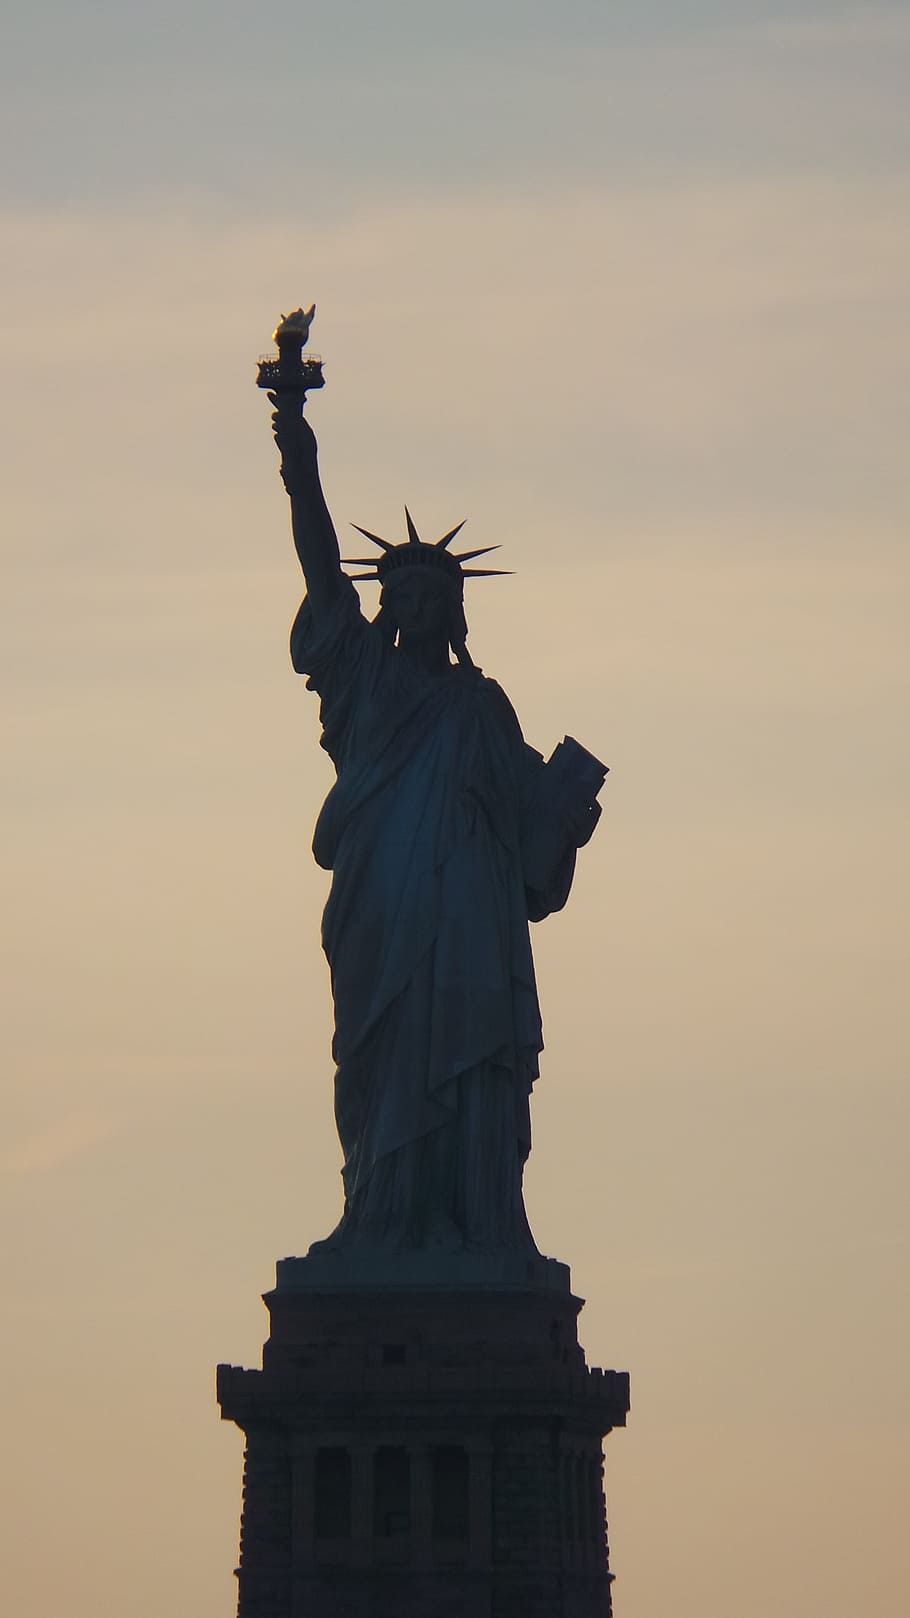 Estatua de la libertad, Libertad, Nueva York, silueta, estatua, monumento, lugar famoso, ciudad de nueva york, isla de la libertad, estados unidos